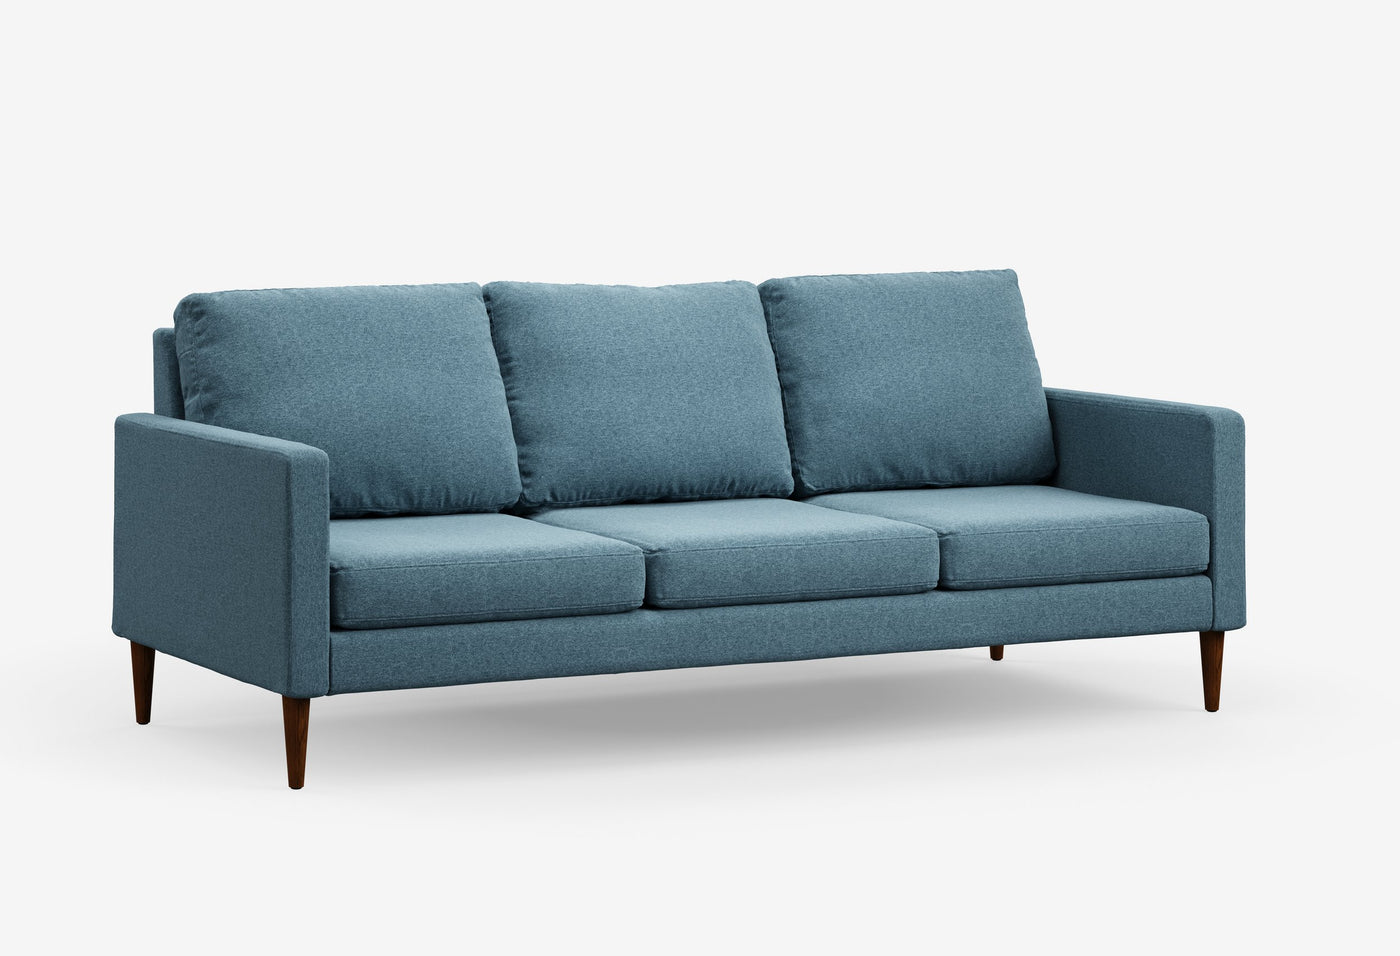 GRID Everlasting Sofa